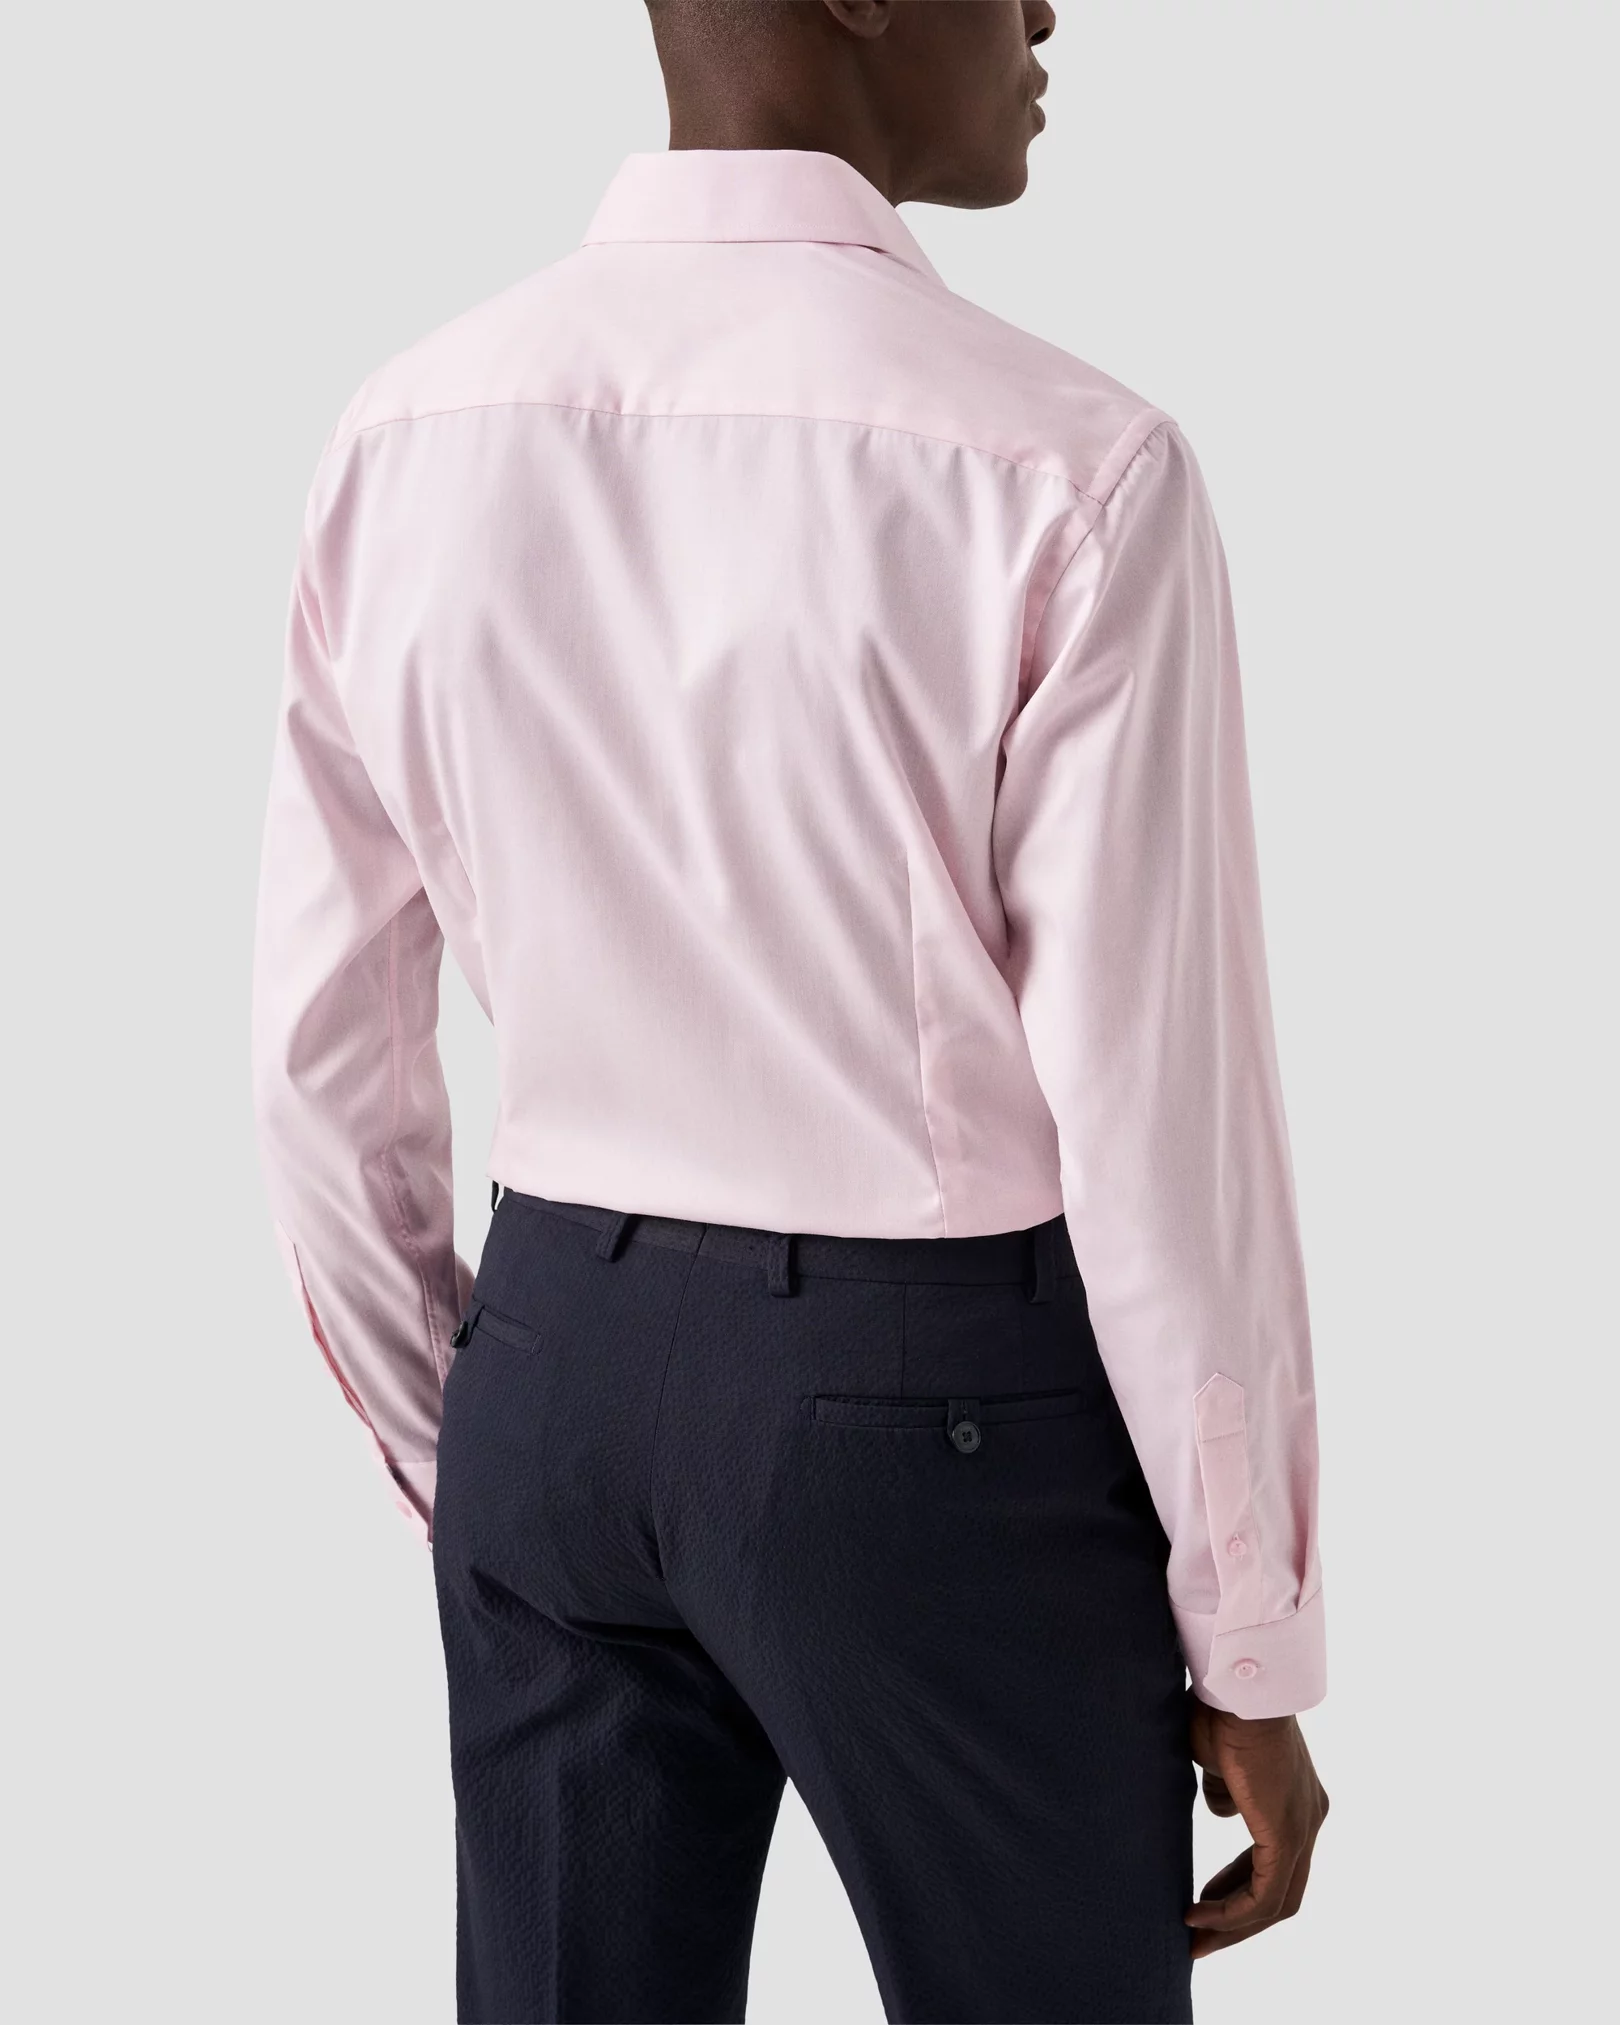 Eton - pink floral detail shirt